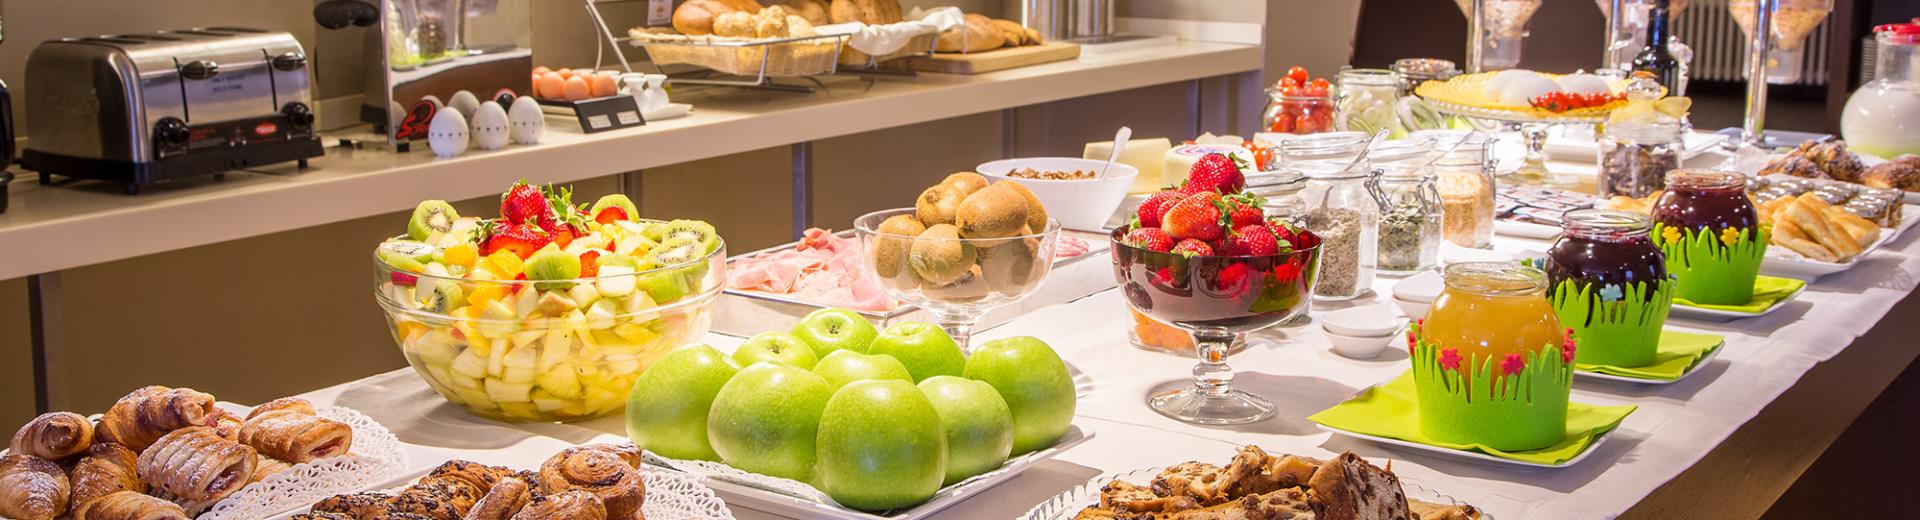 Il ricco buffet per la colazione dell'Hotel Metropoli di Genova